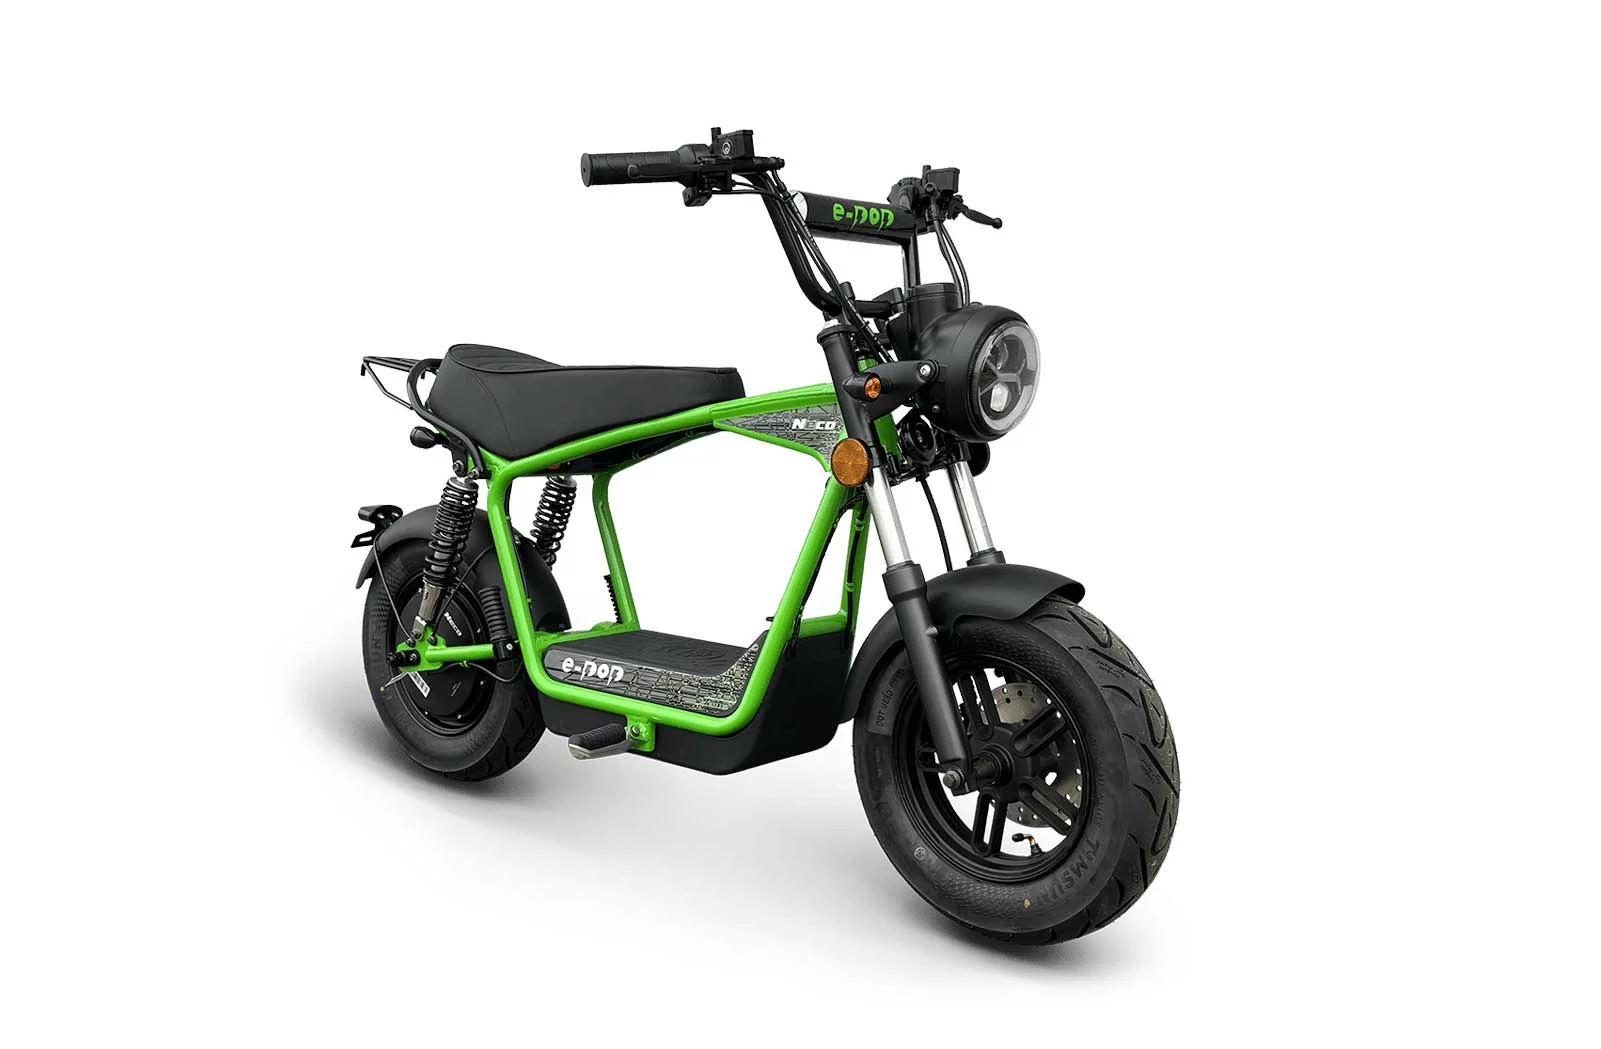 La moto électrique Neco E-pop est à moins de 2 000 €